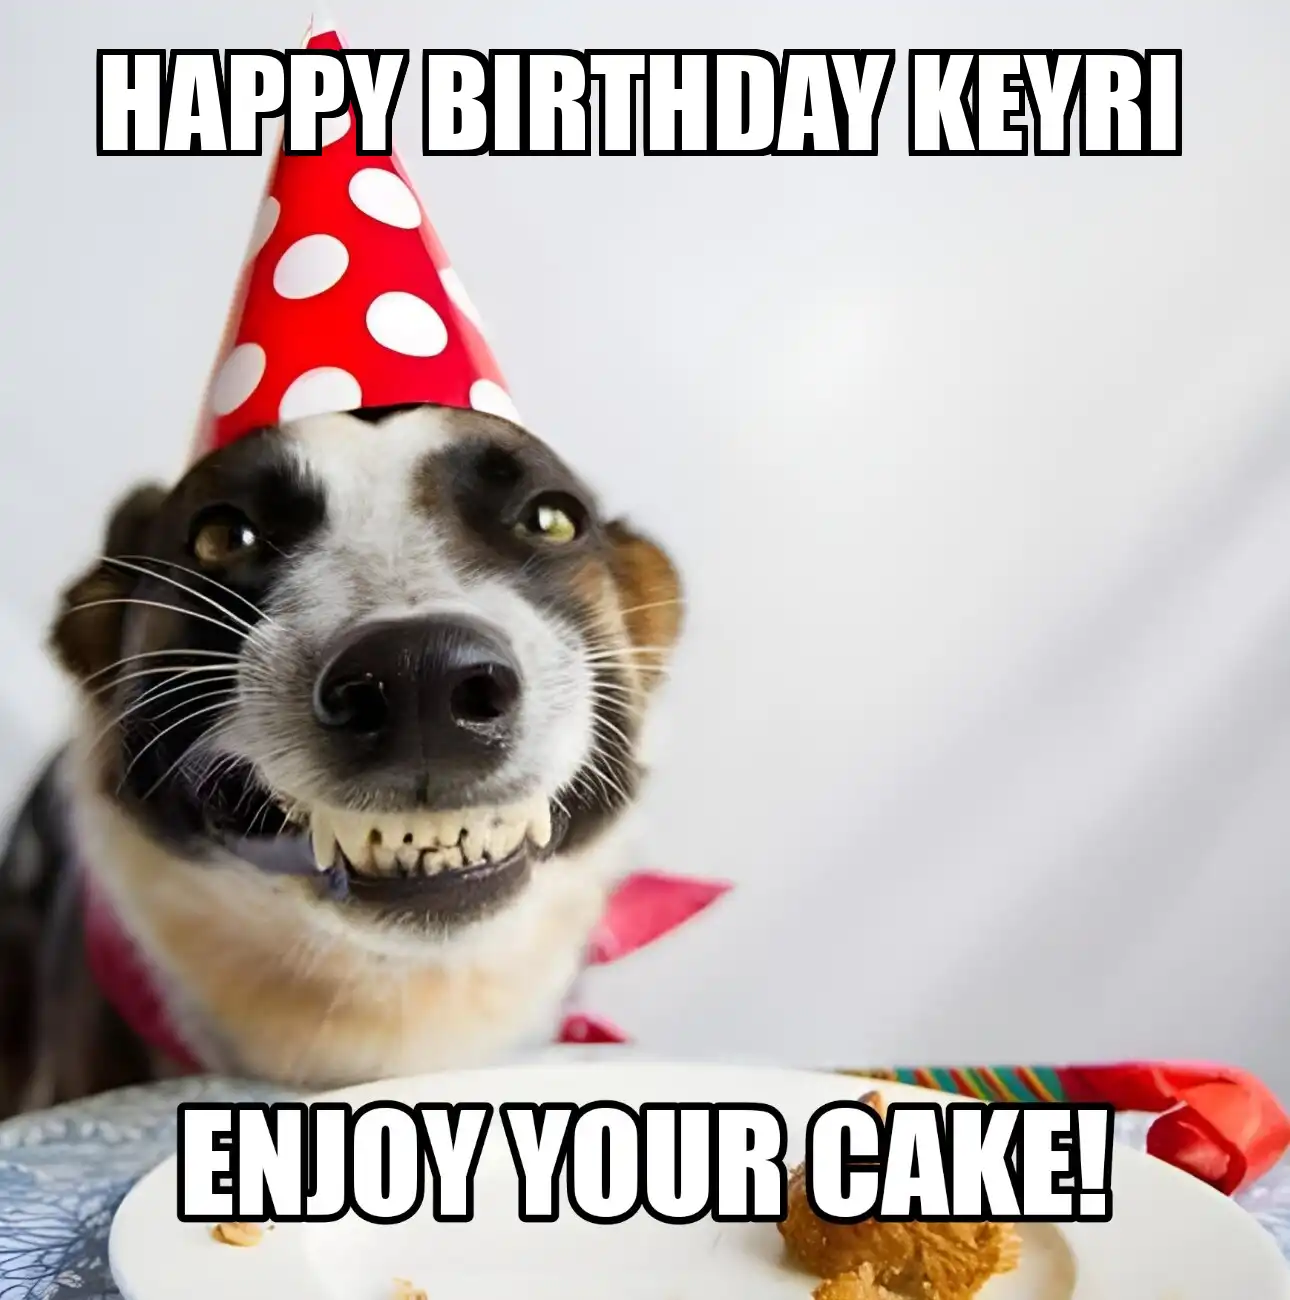 Happy Birthday Keyri Enjoy Your Cake Dog Meme